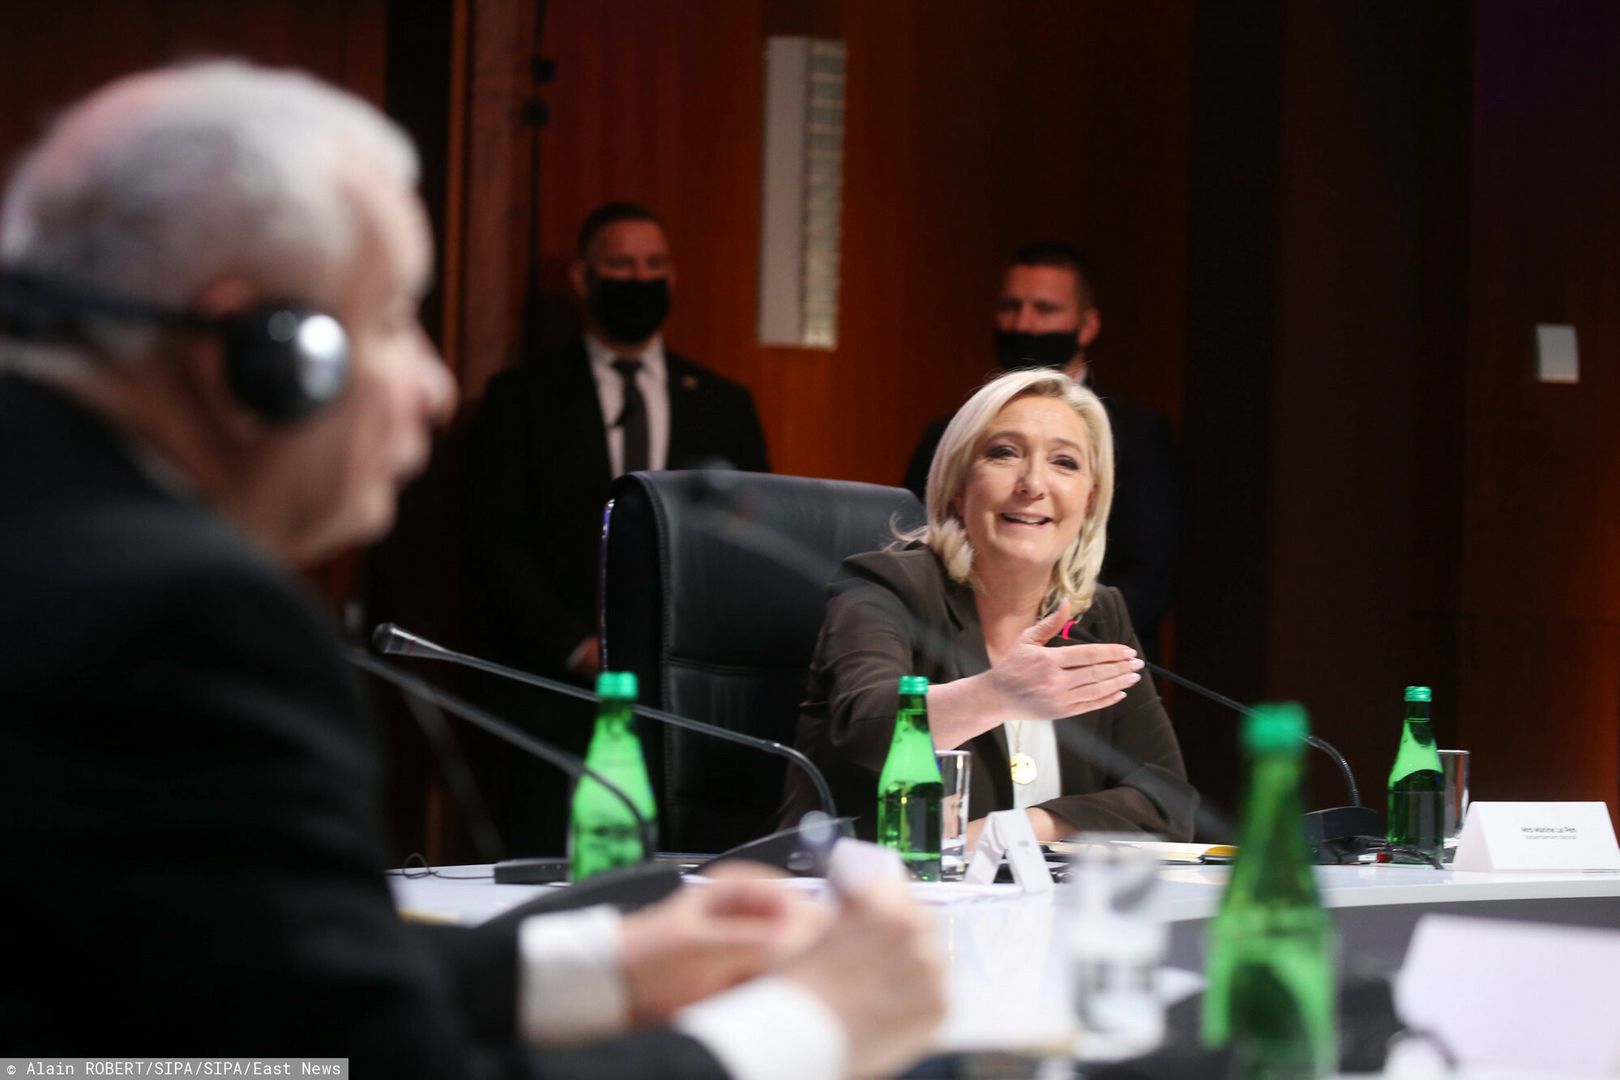 Marine Le Pen w Warszawie. Były premier nie gryzł się w język